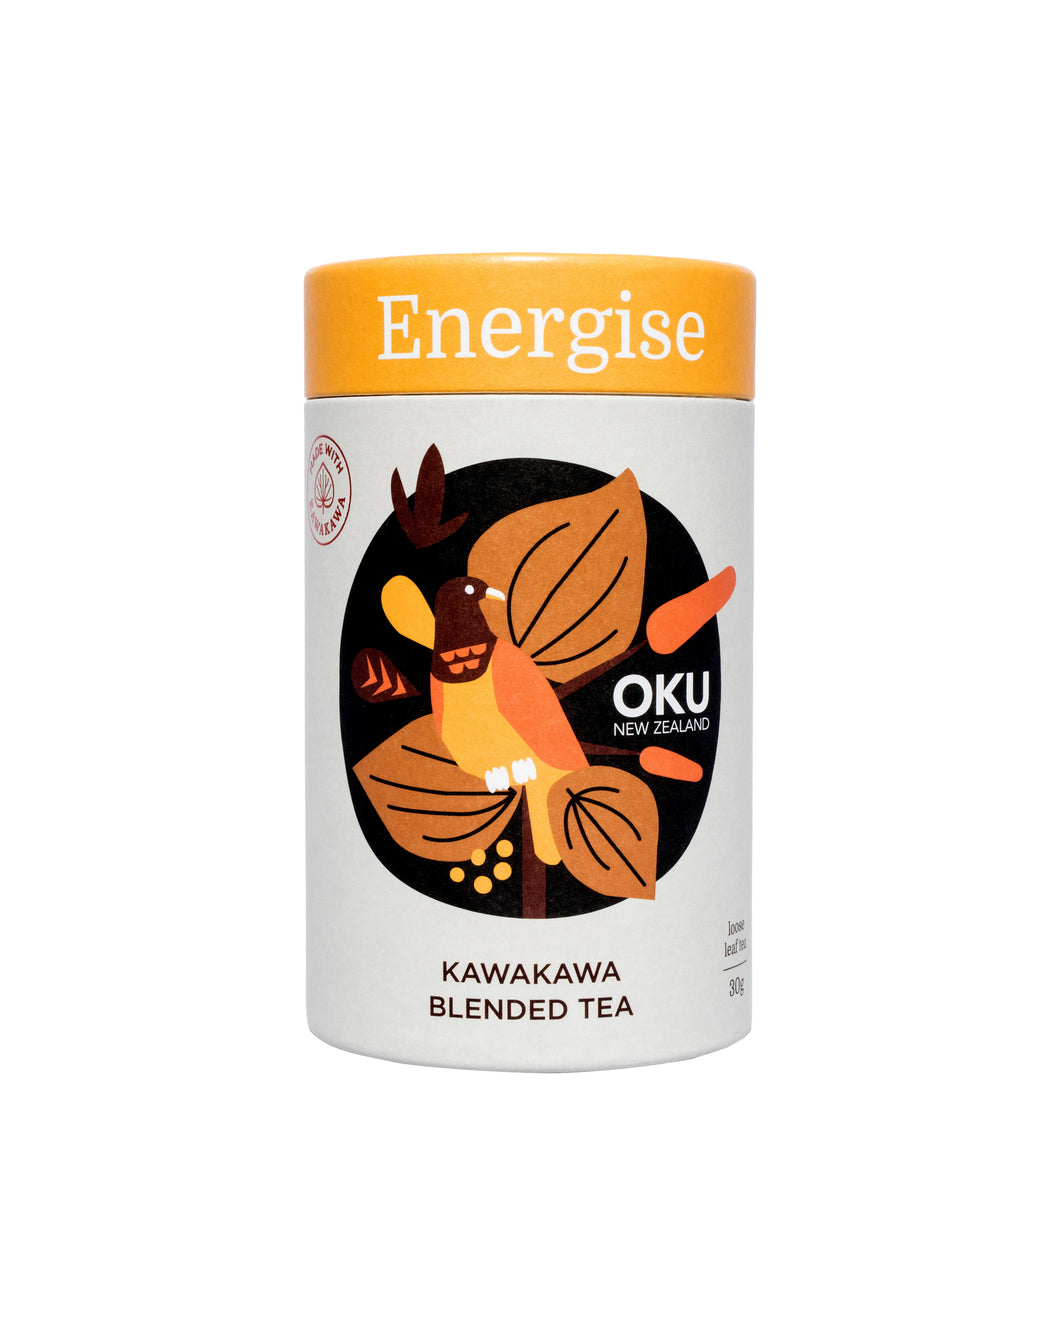 ŌKU Energise Tea 30g Loose